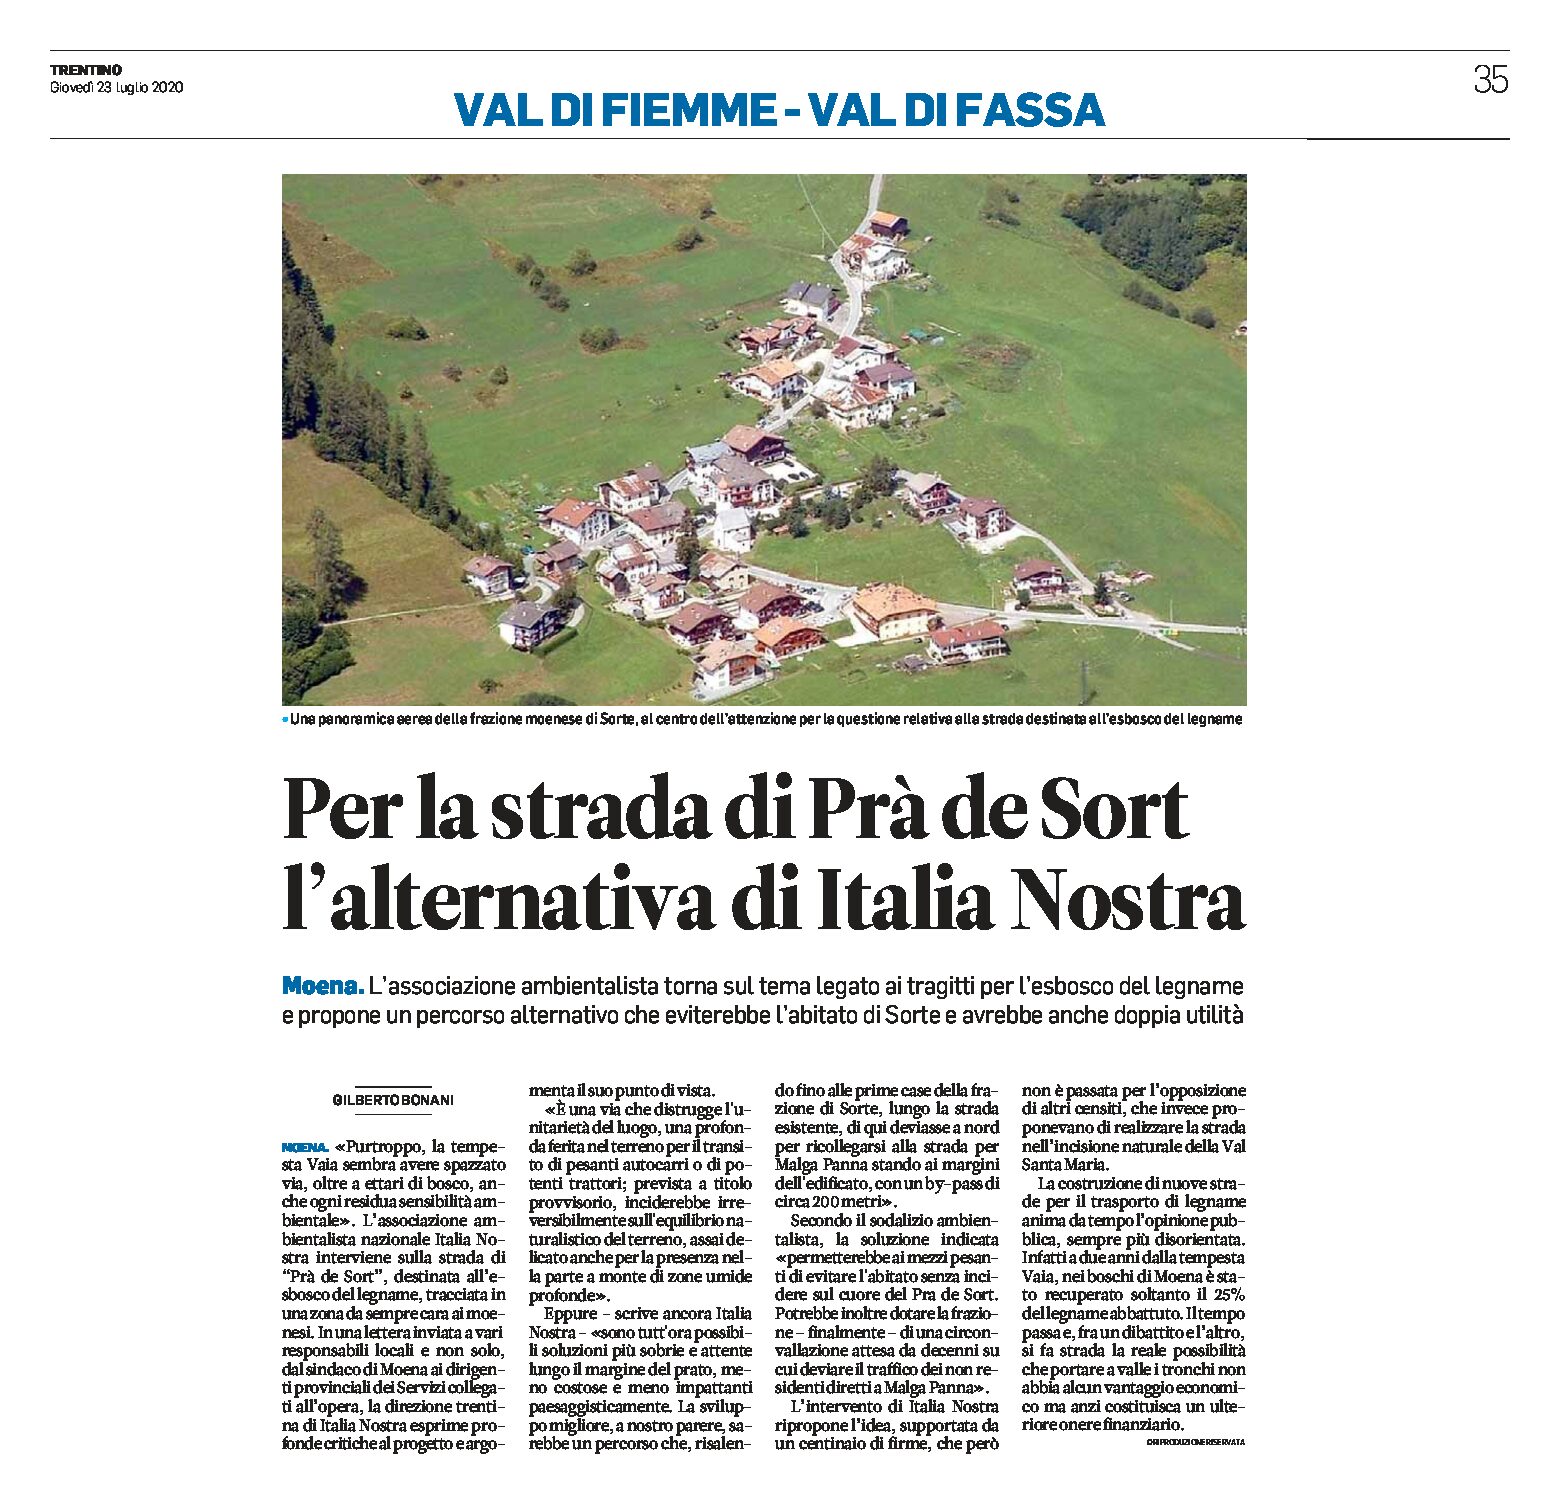 Moena: Italia Nostra propone, per l’esbosco del legname, un percorso alternativo con una doppia utilità